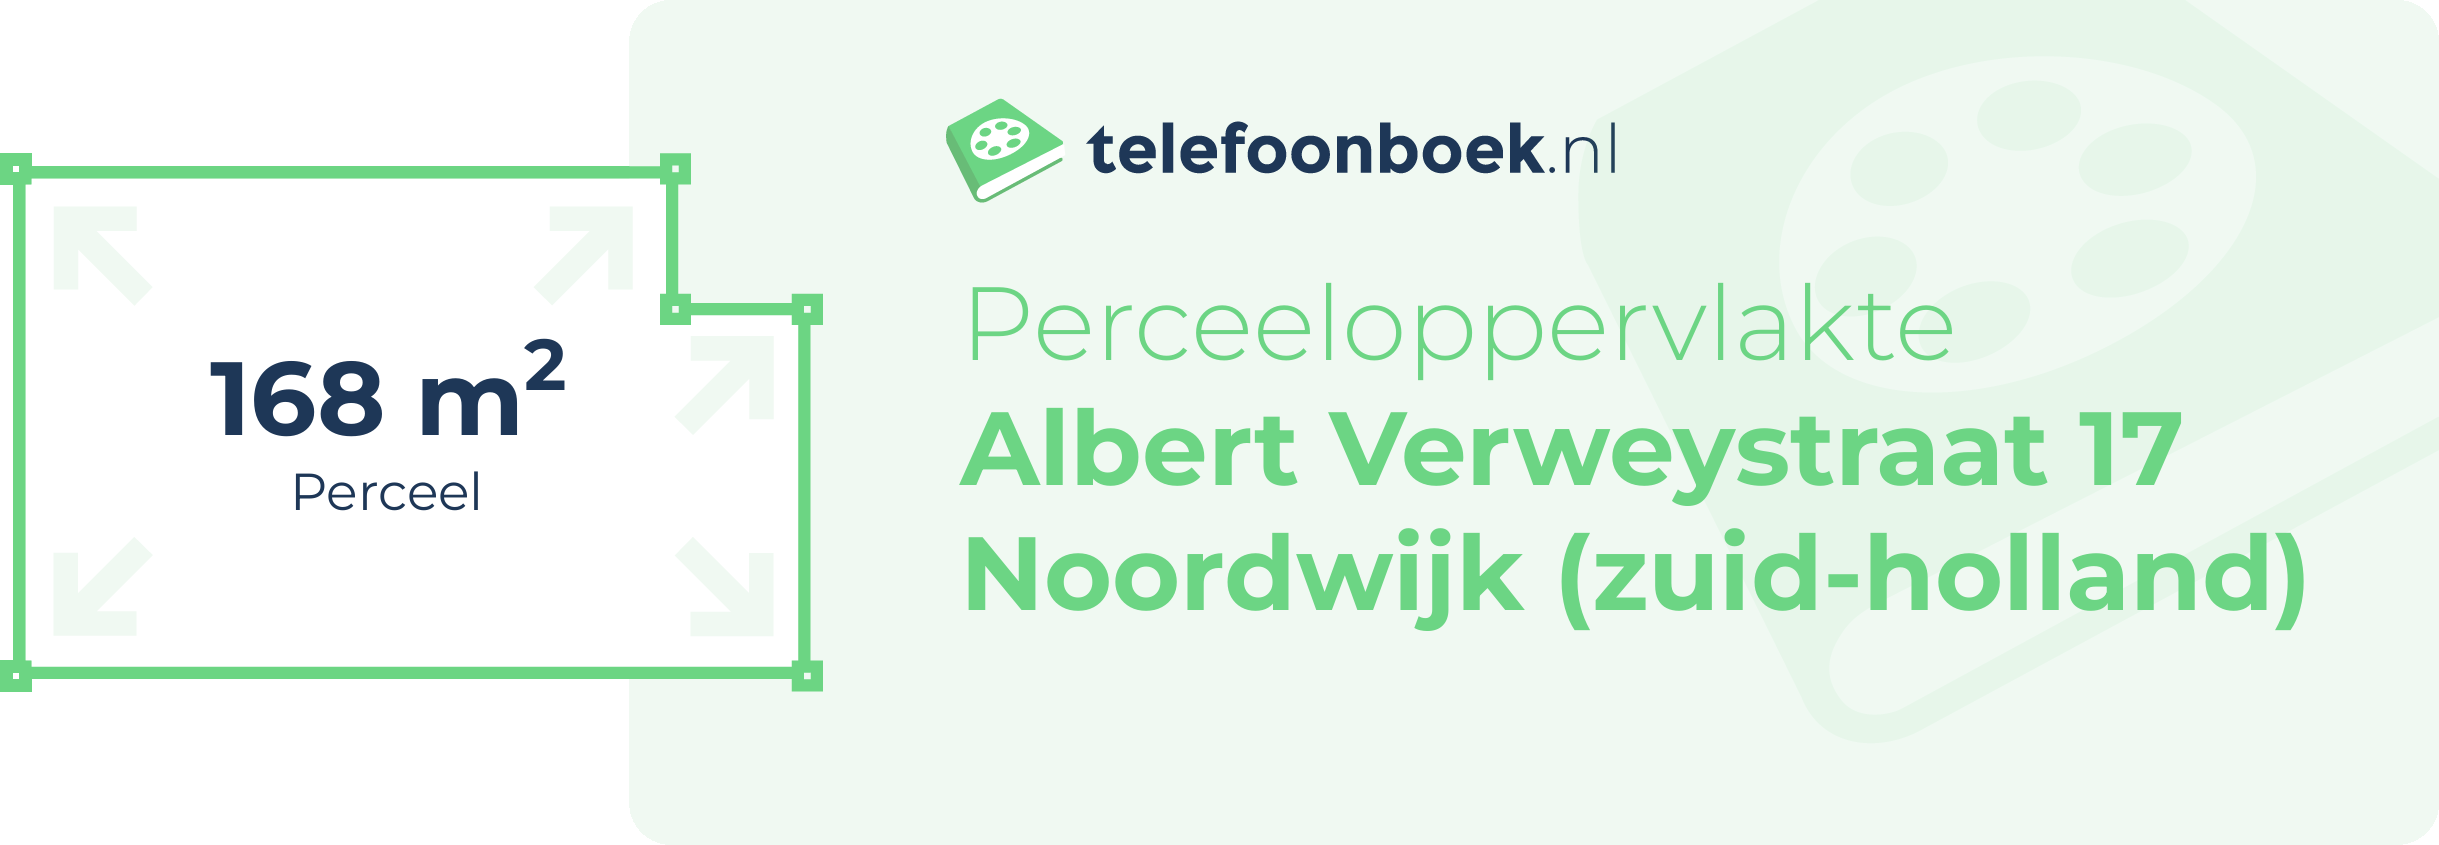 Perceeloppervlakte Albert Verweystraat 17 Noordwijk (Zuid-Holland)